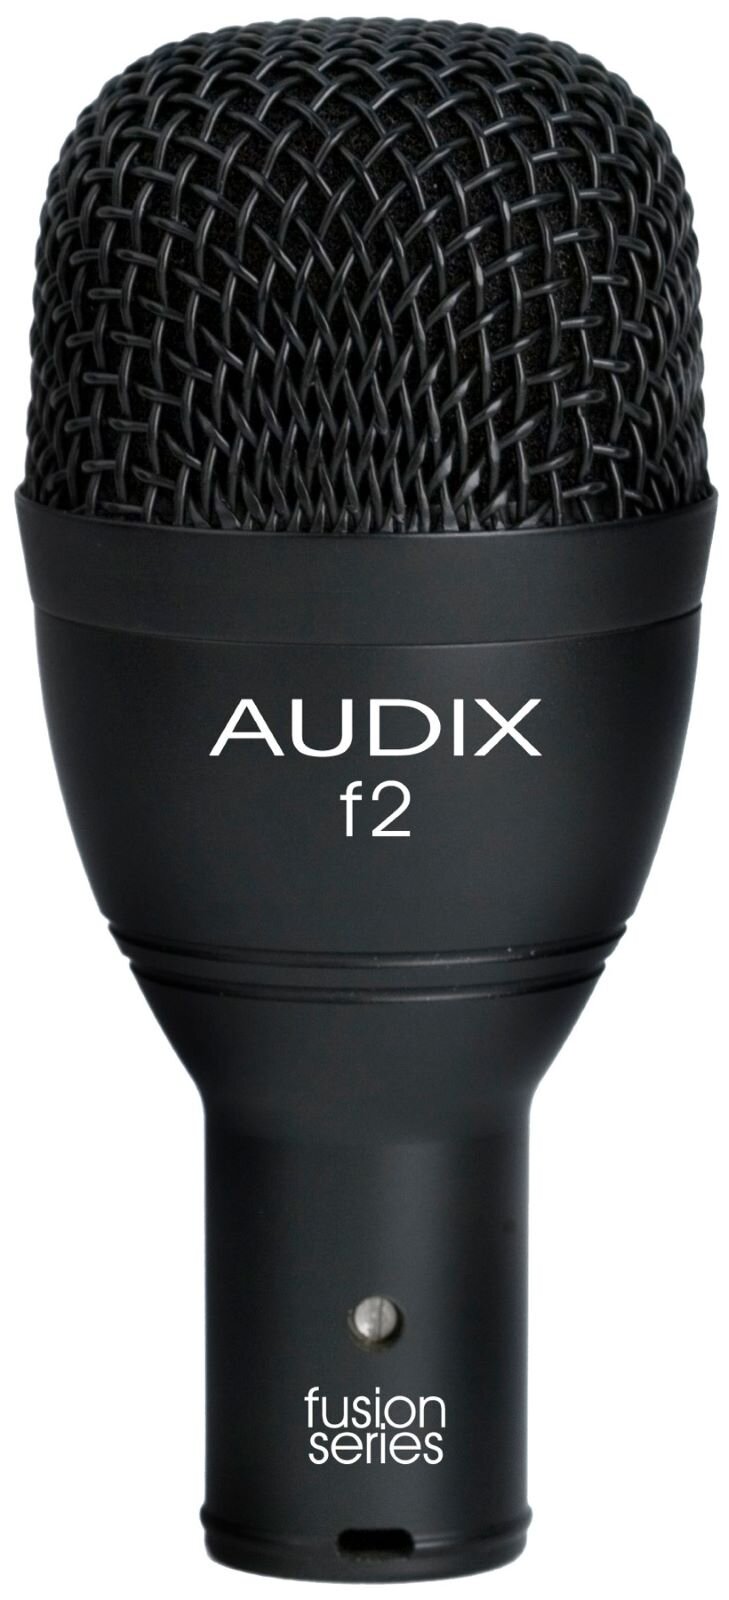 Audix Fusion F2 : photo 1